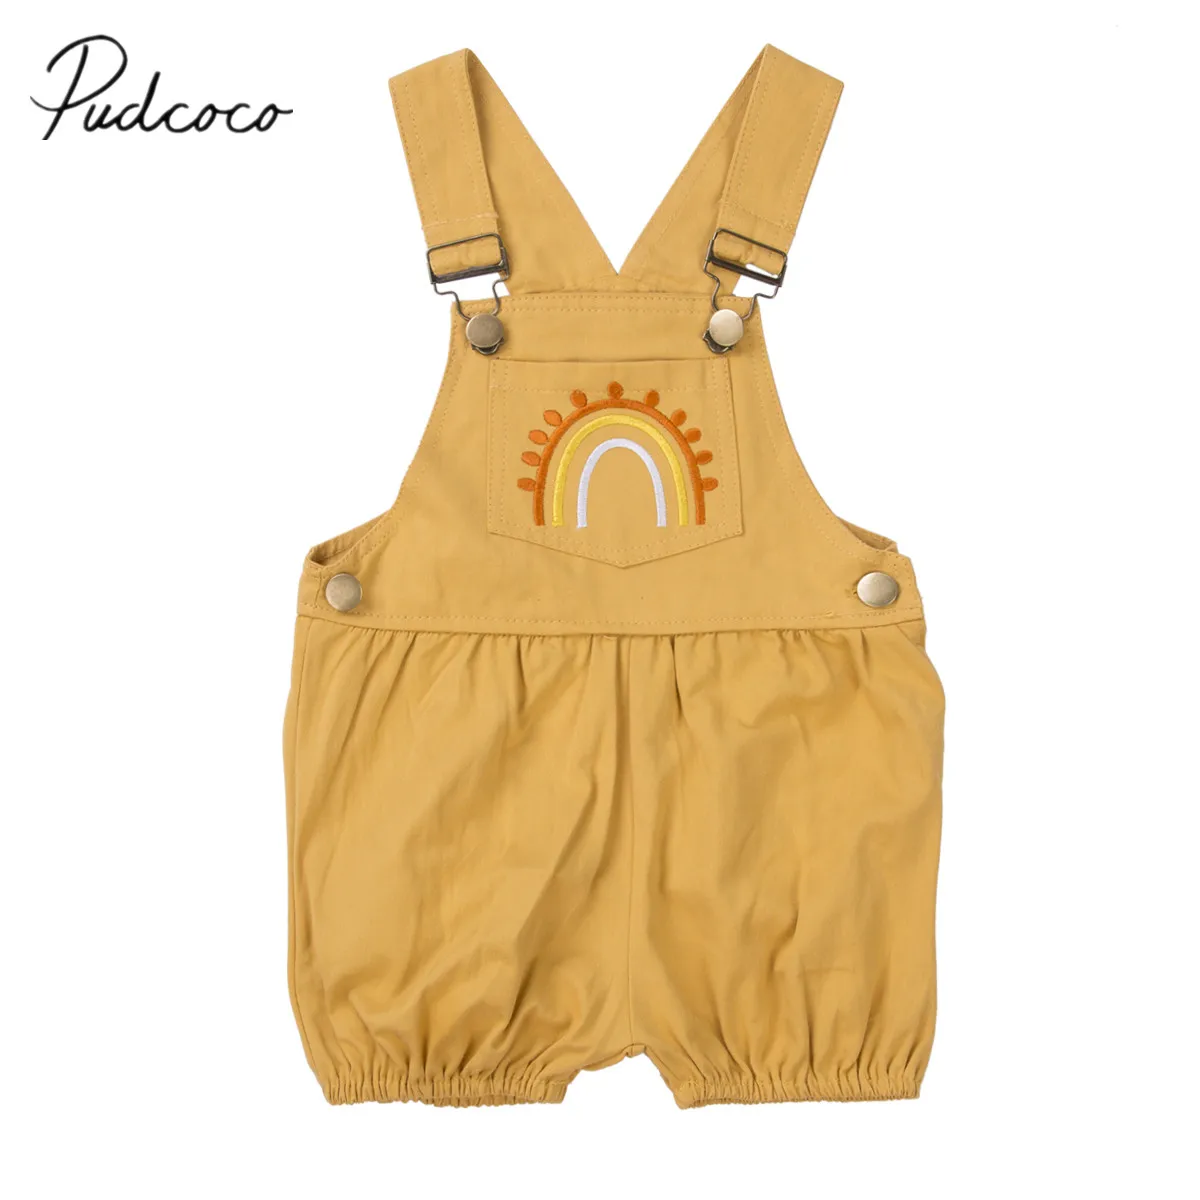 Г. Летняя одежда для малышей Милая Одежда для маленьких девочек Комбинезон с вышивкой радуги, комбинезон, От 6 месяцев до 4 лет